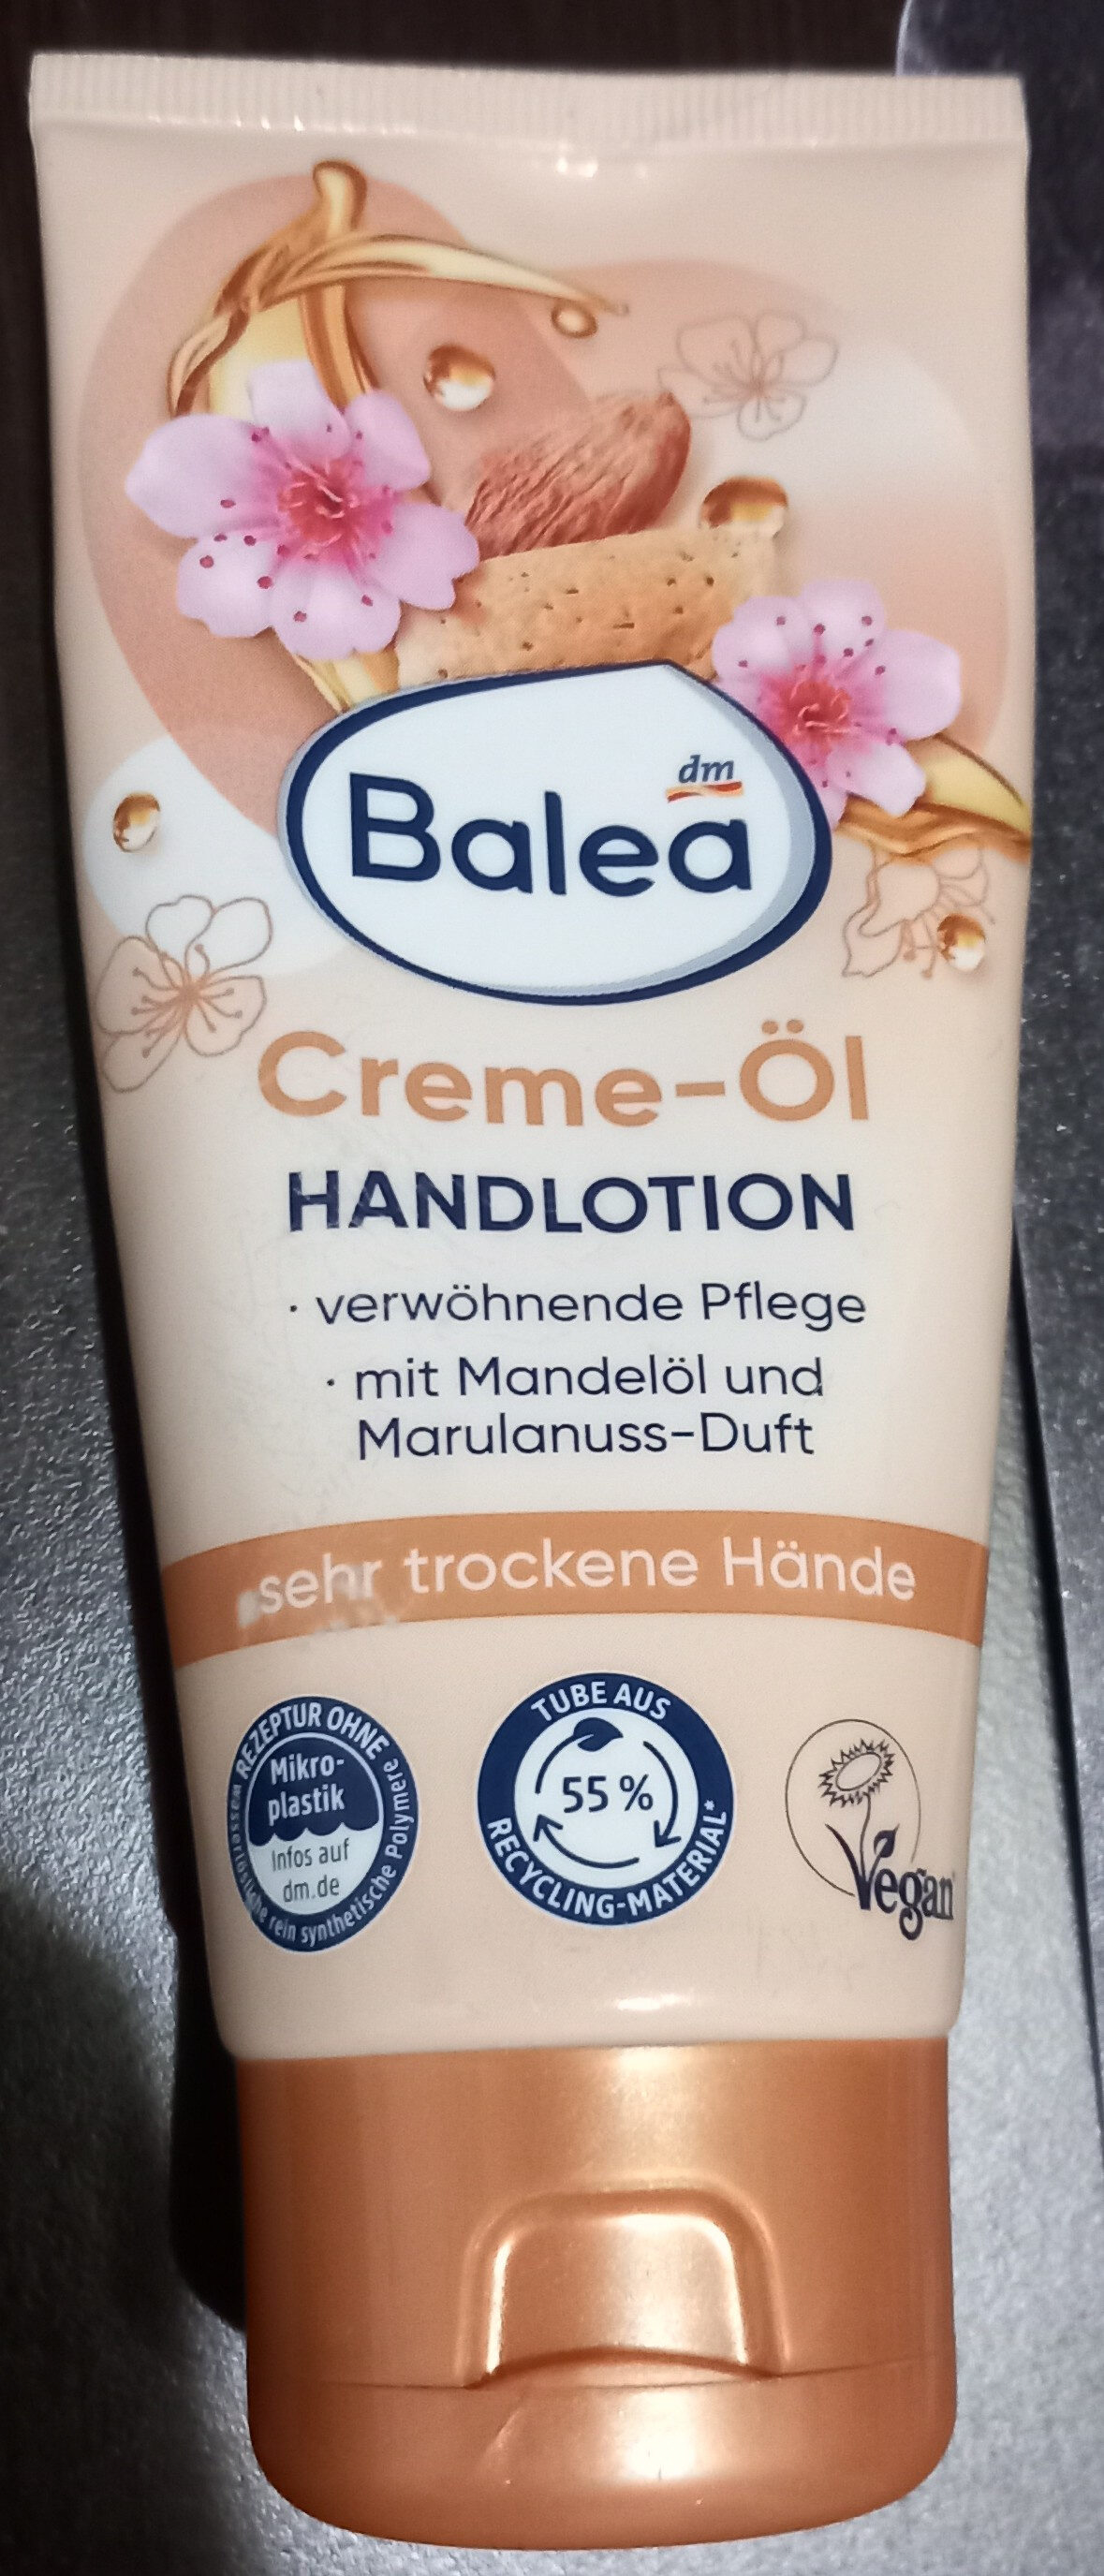 hand lotion - Produkt - en